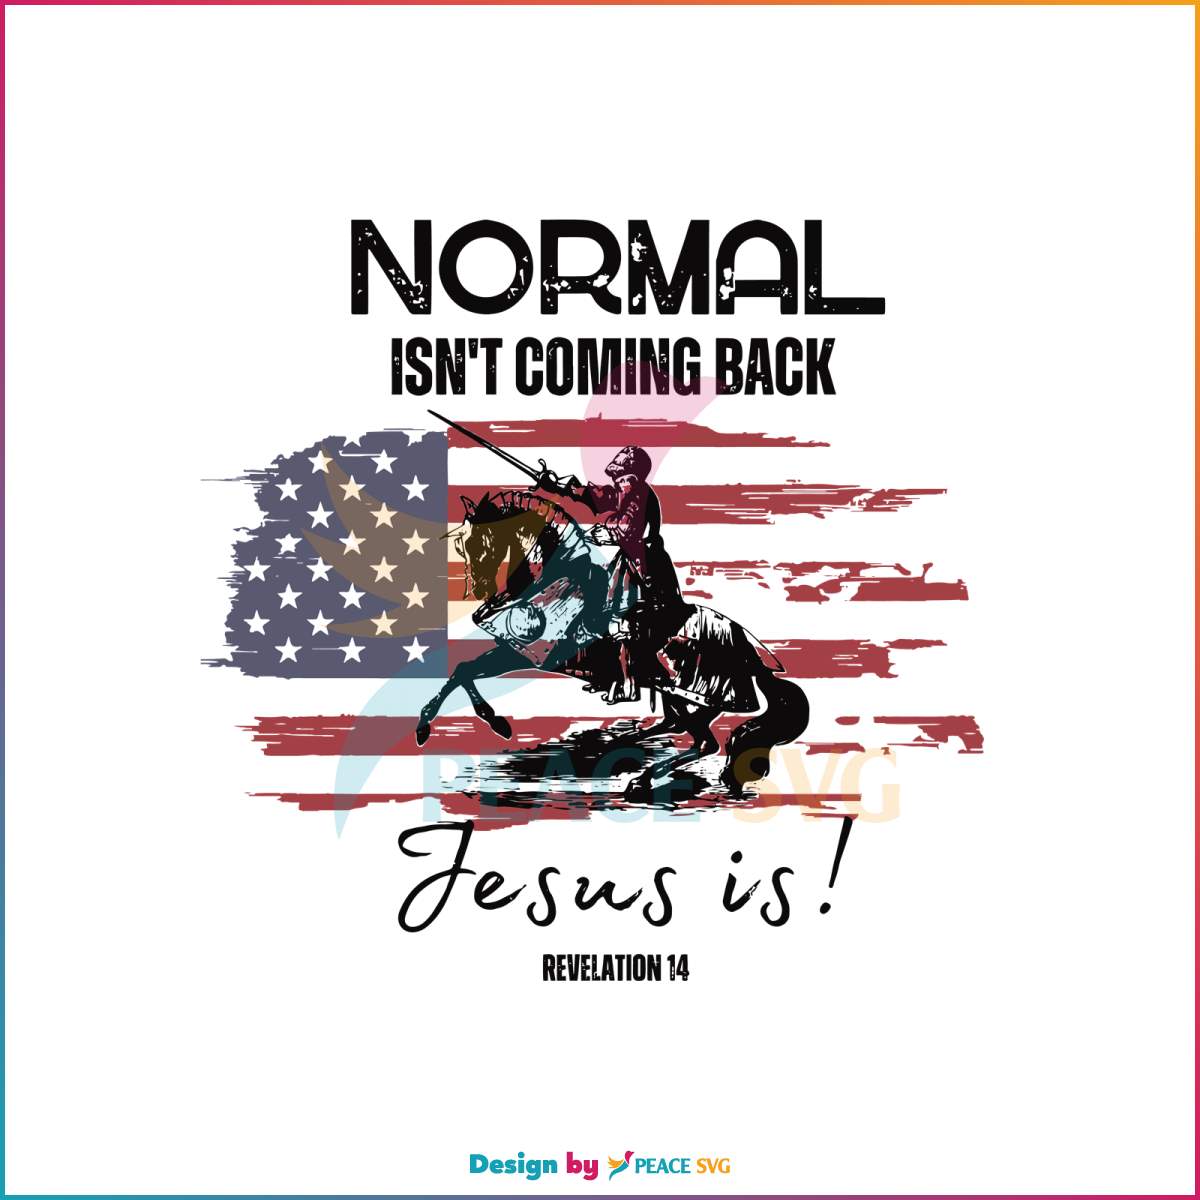 normal-isnt-coming-back-jesus-is-svg-graphic-design-file